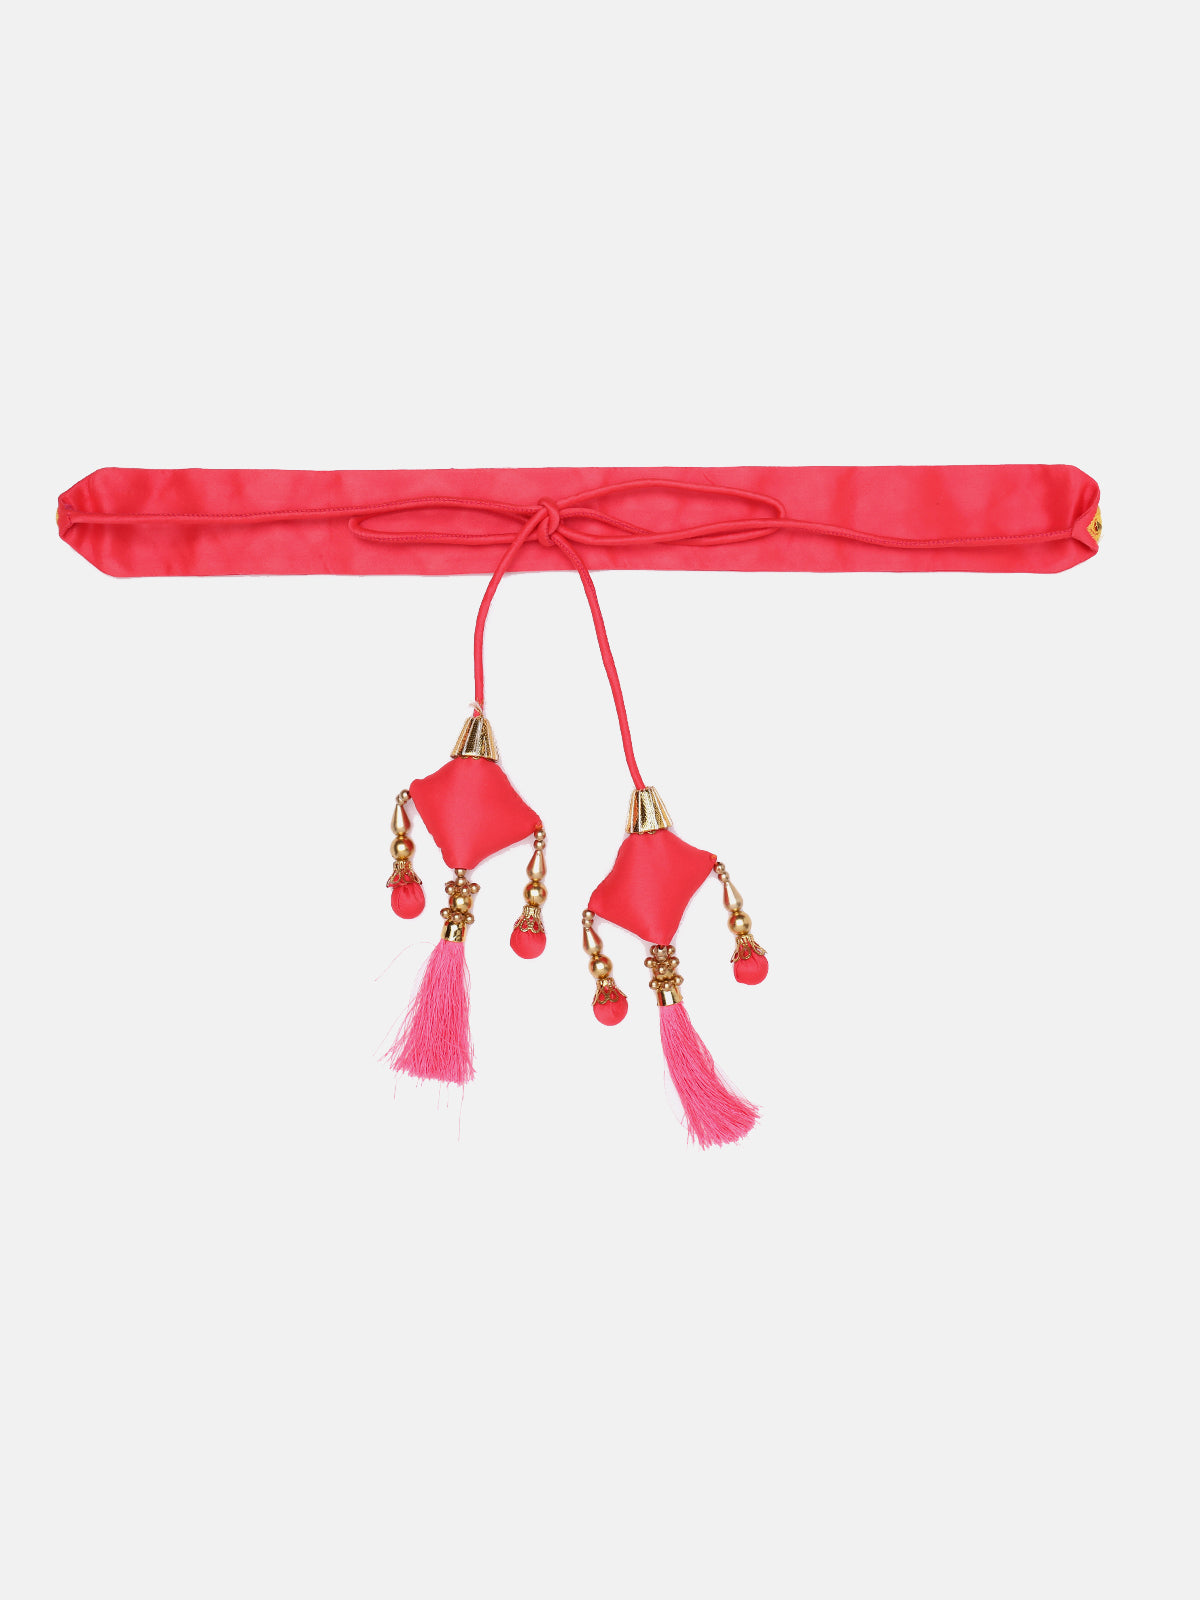 Neon-Pink Mirror Work Hand Made Ethnic Waist Belt With Tassels